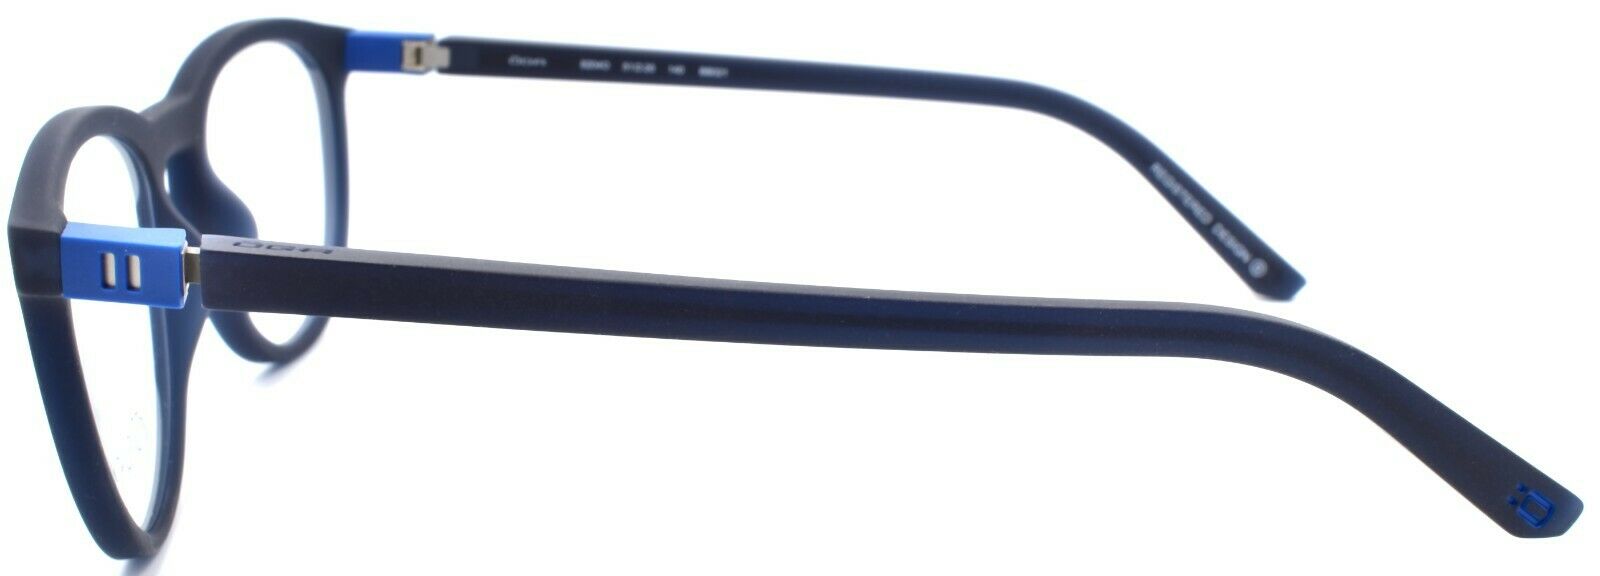 3-OGA by Morel 8204O BB021 Eyeglasses Frames 51-20-140 Dark Blue-3604770897661-IKSpecs